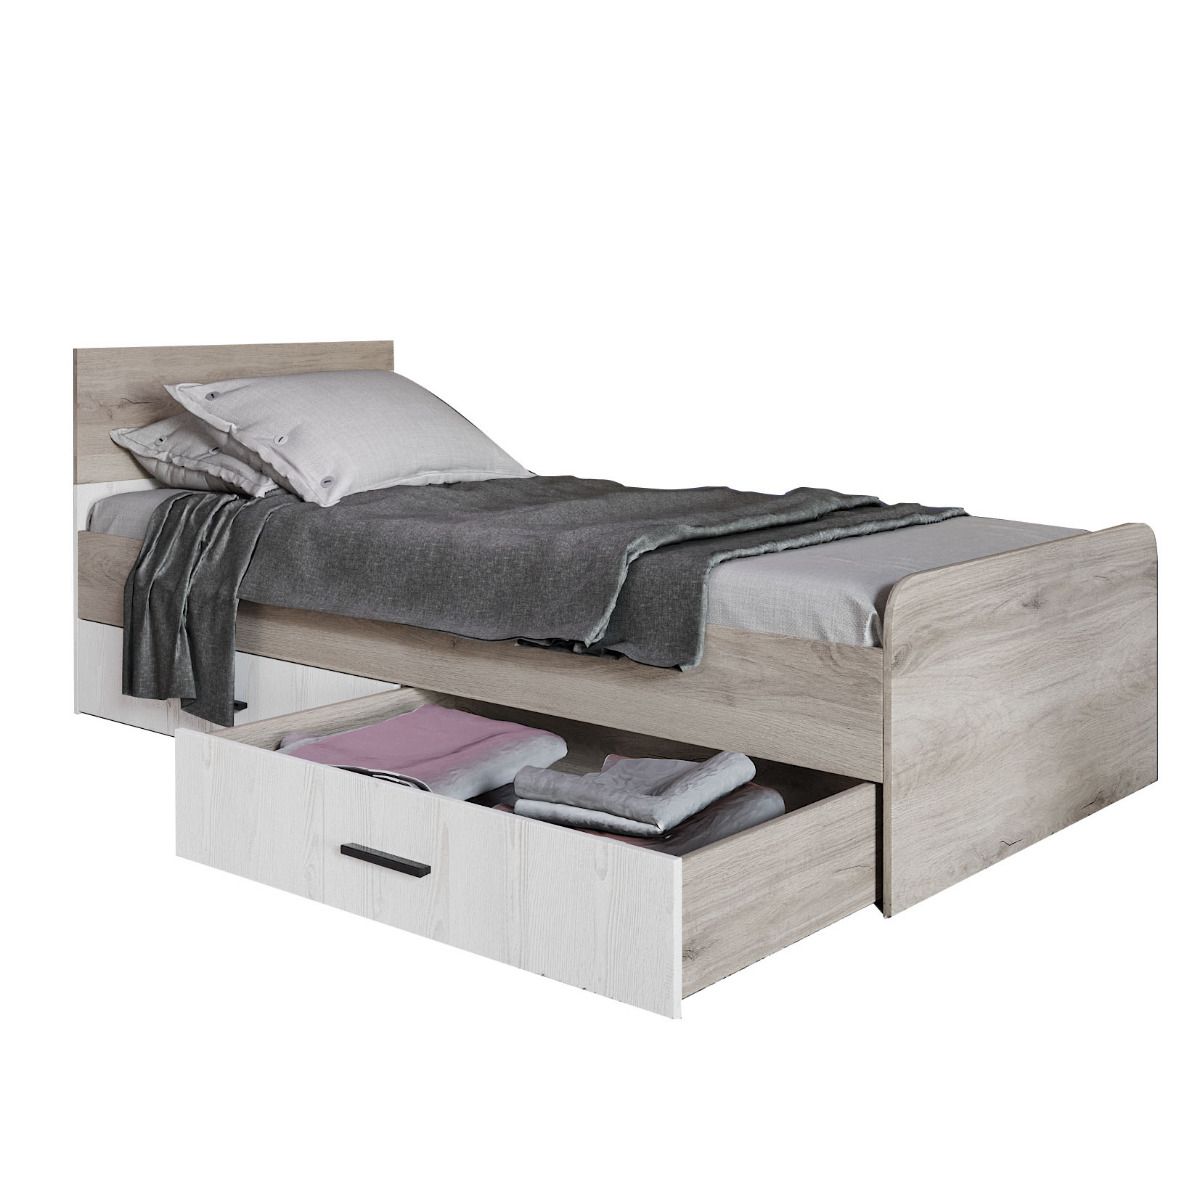 Κρεβάτι μονό "LITTLE" με συρτάρια σε σκούρο σονόμα-λευκό χρώμα 90x200